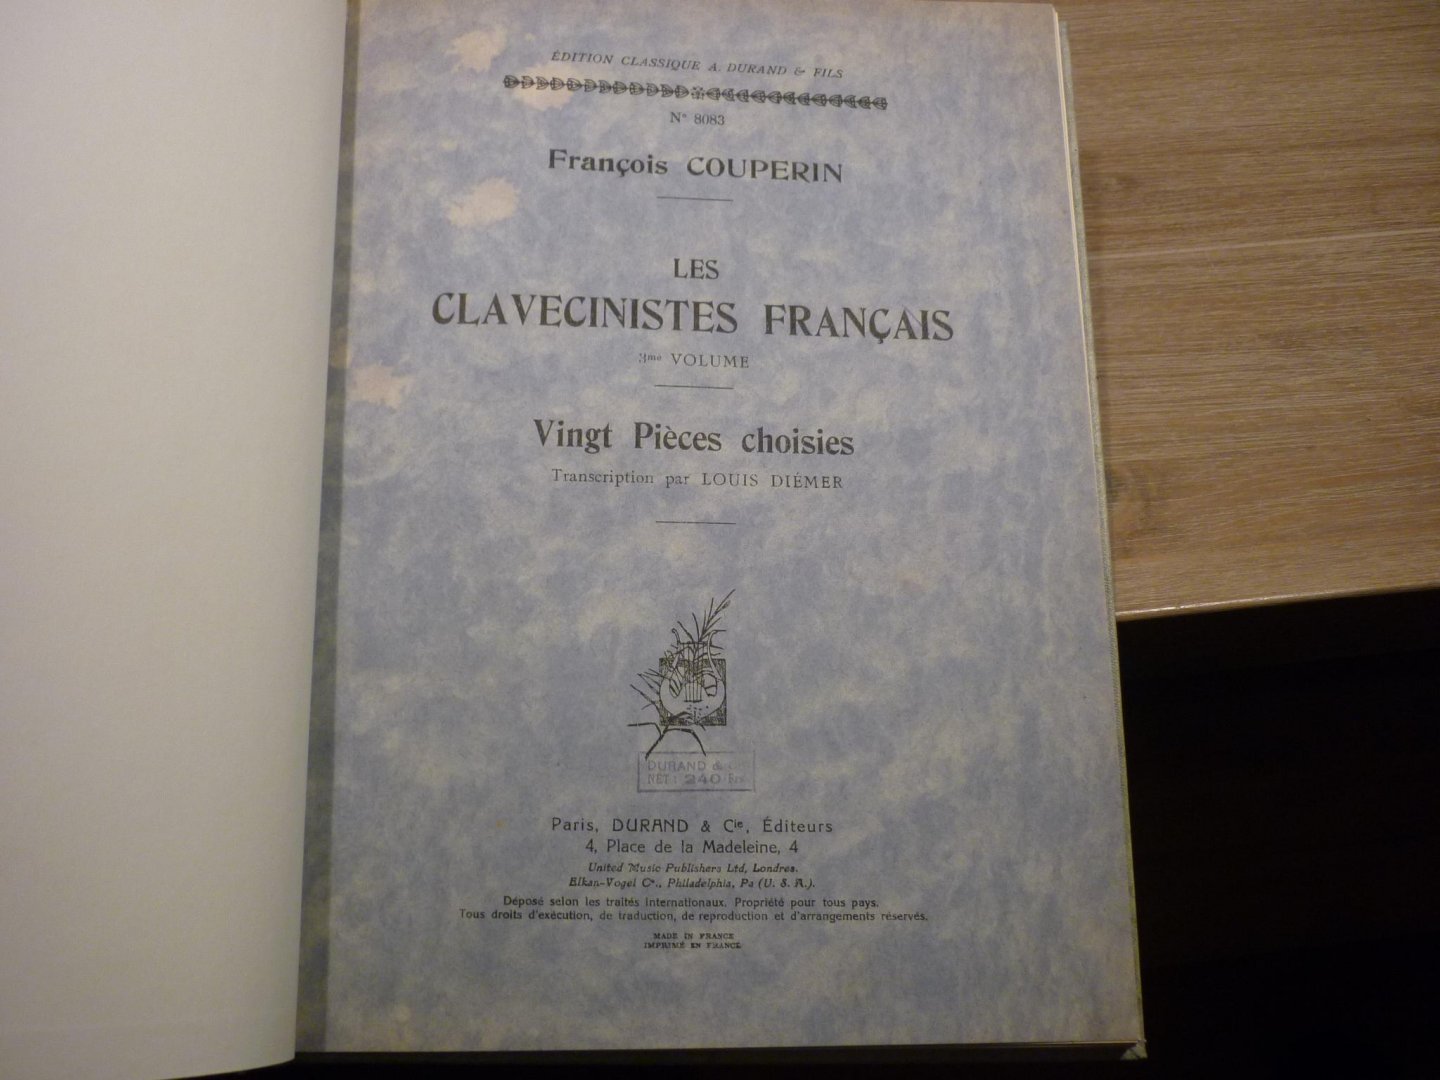 Couperin; François (1668–1733) - Les Clavecinistes Francais - 3me Volume; Les Clavecinistes Francais - 3me Volume; voor Klavecimbel (transcription par Louis Diémer)